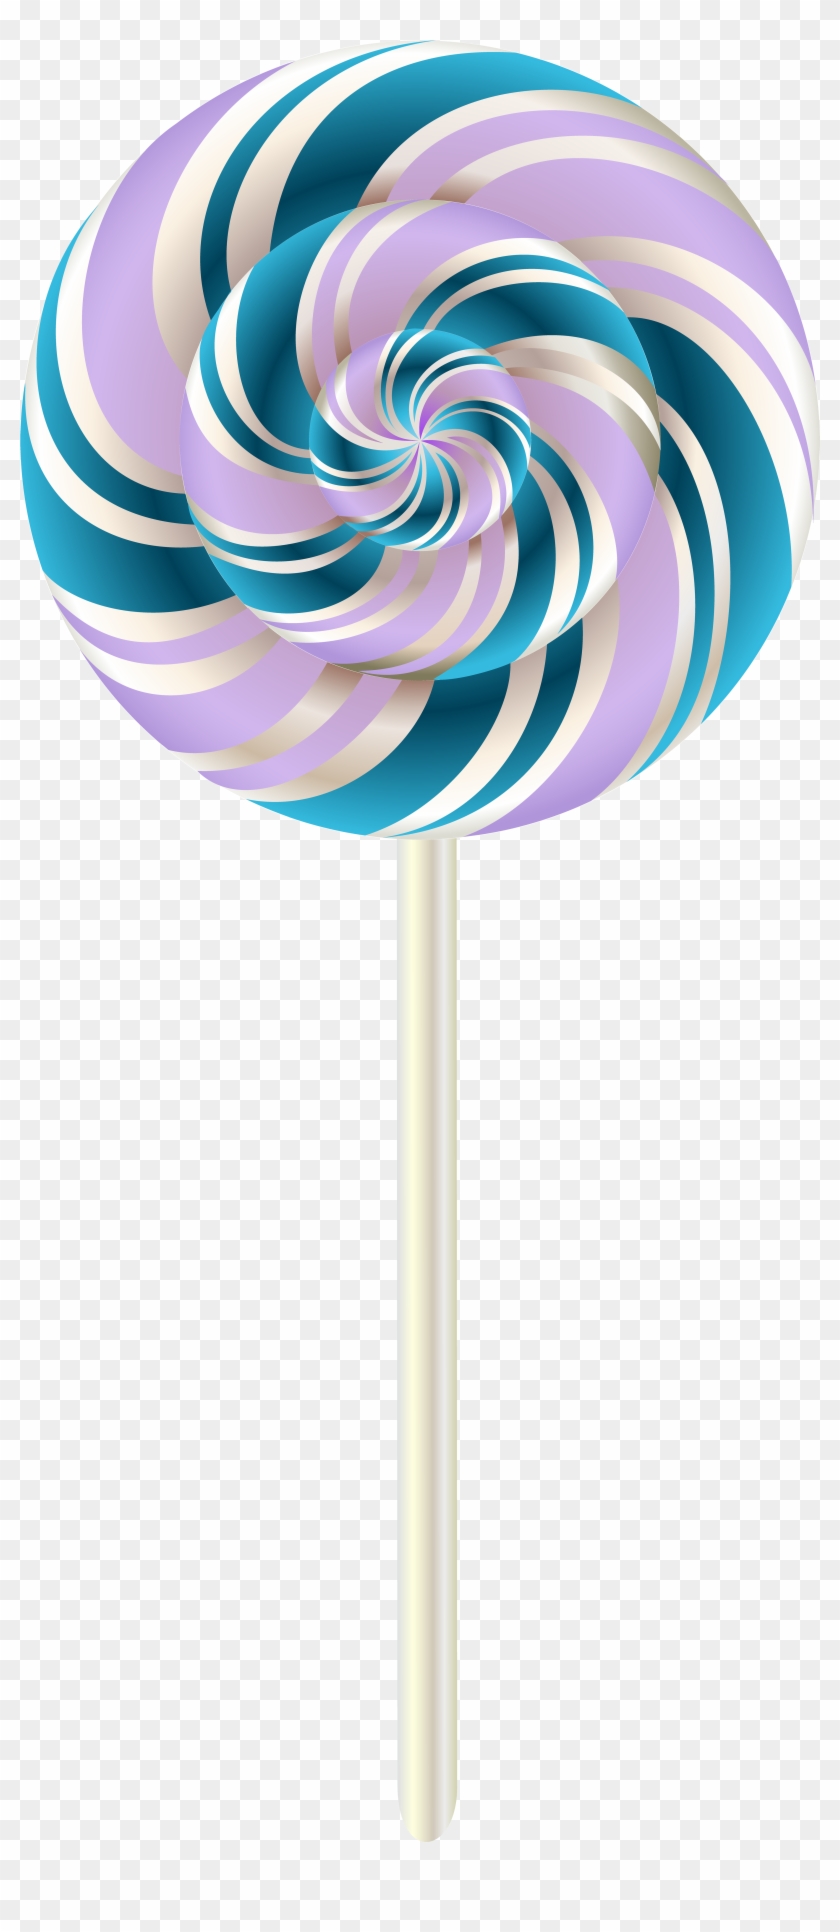 Swirl Lollipop Transparent Png Clip Art Image - Lollipop Transparent #157763